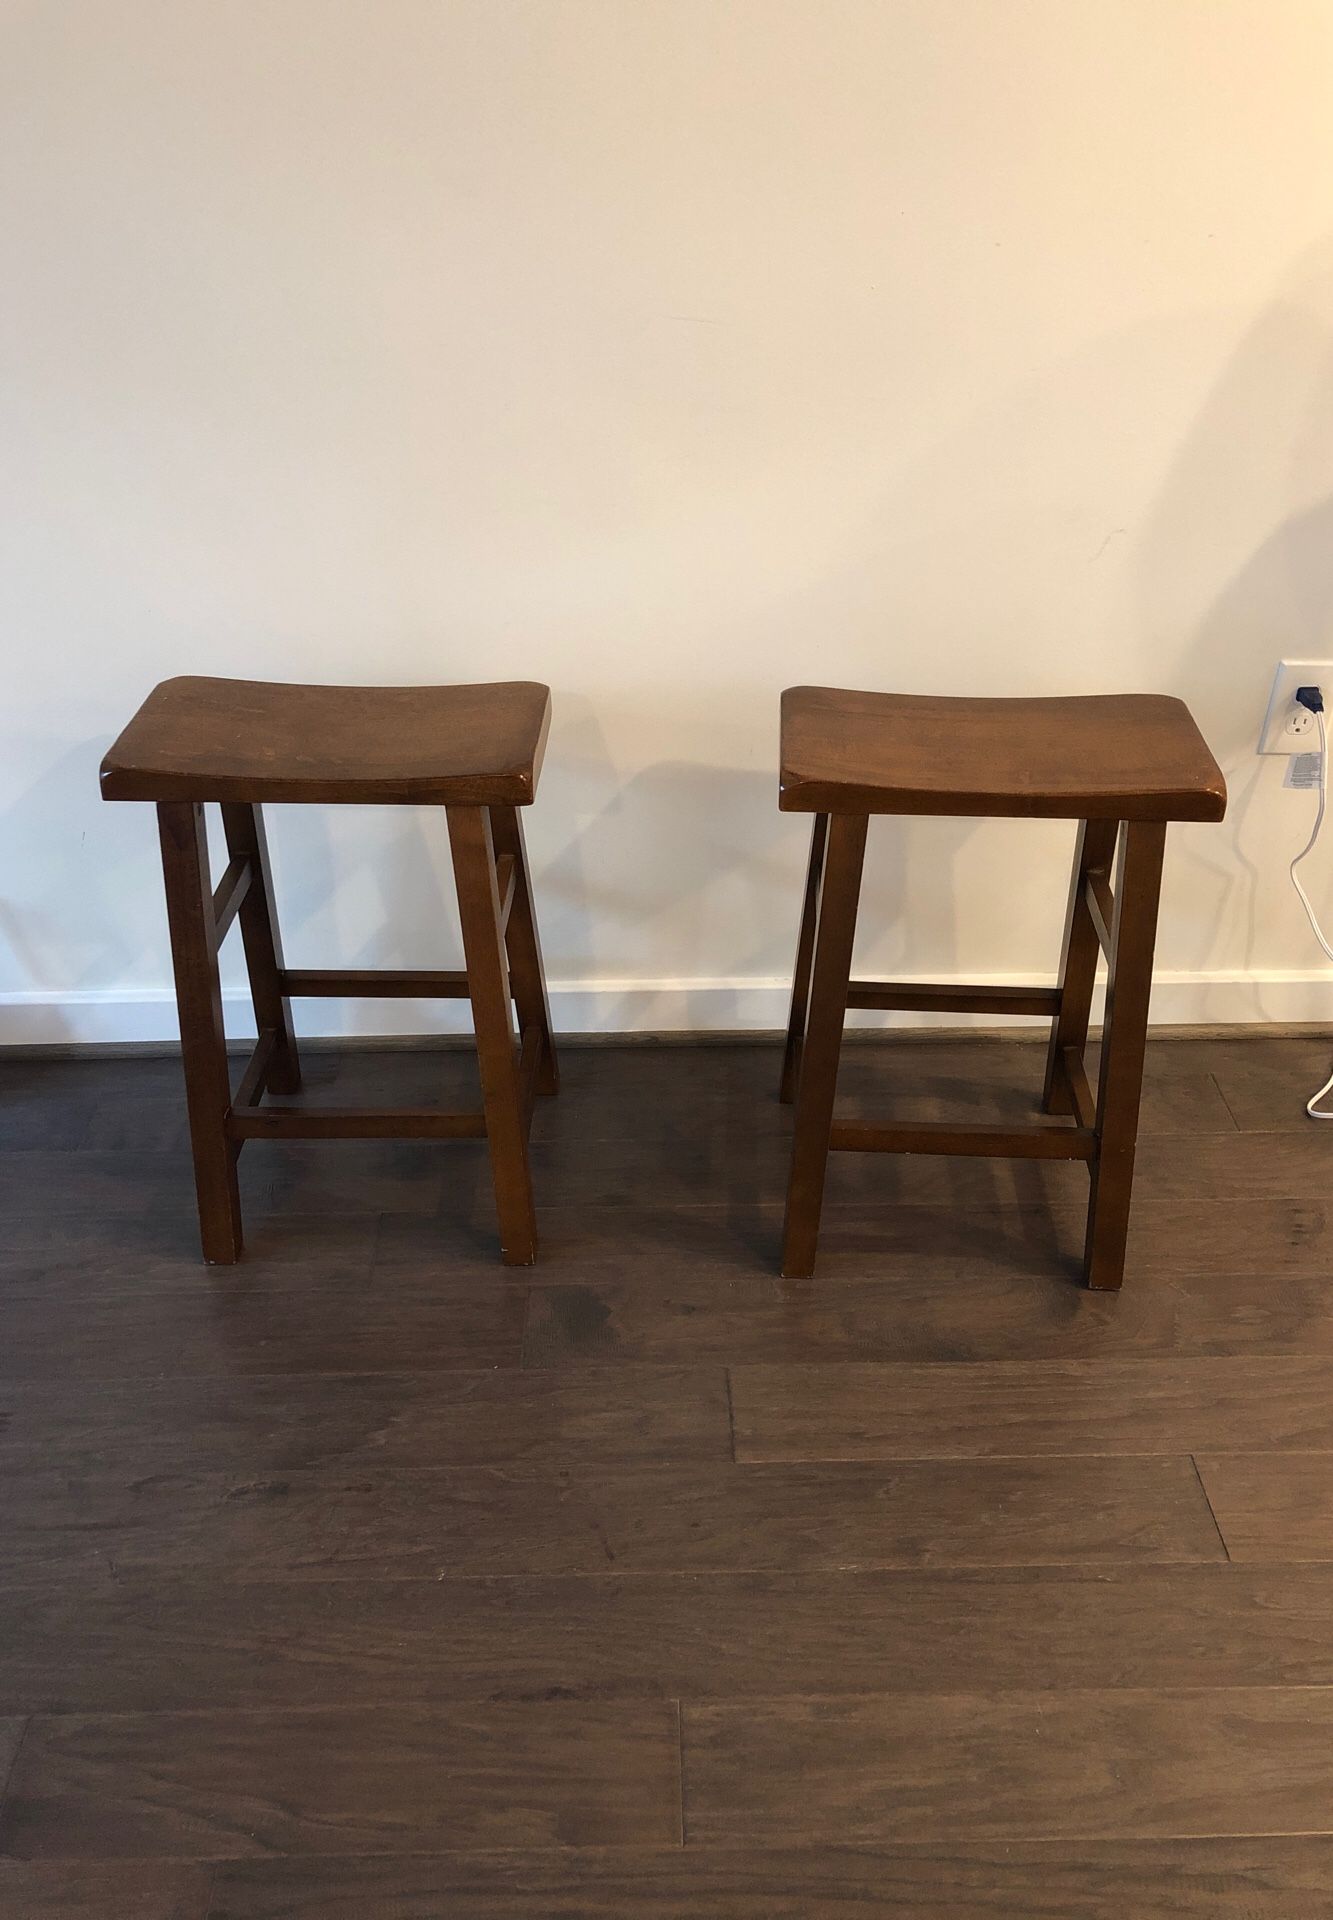 2 - Wooden bar stools 24”